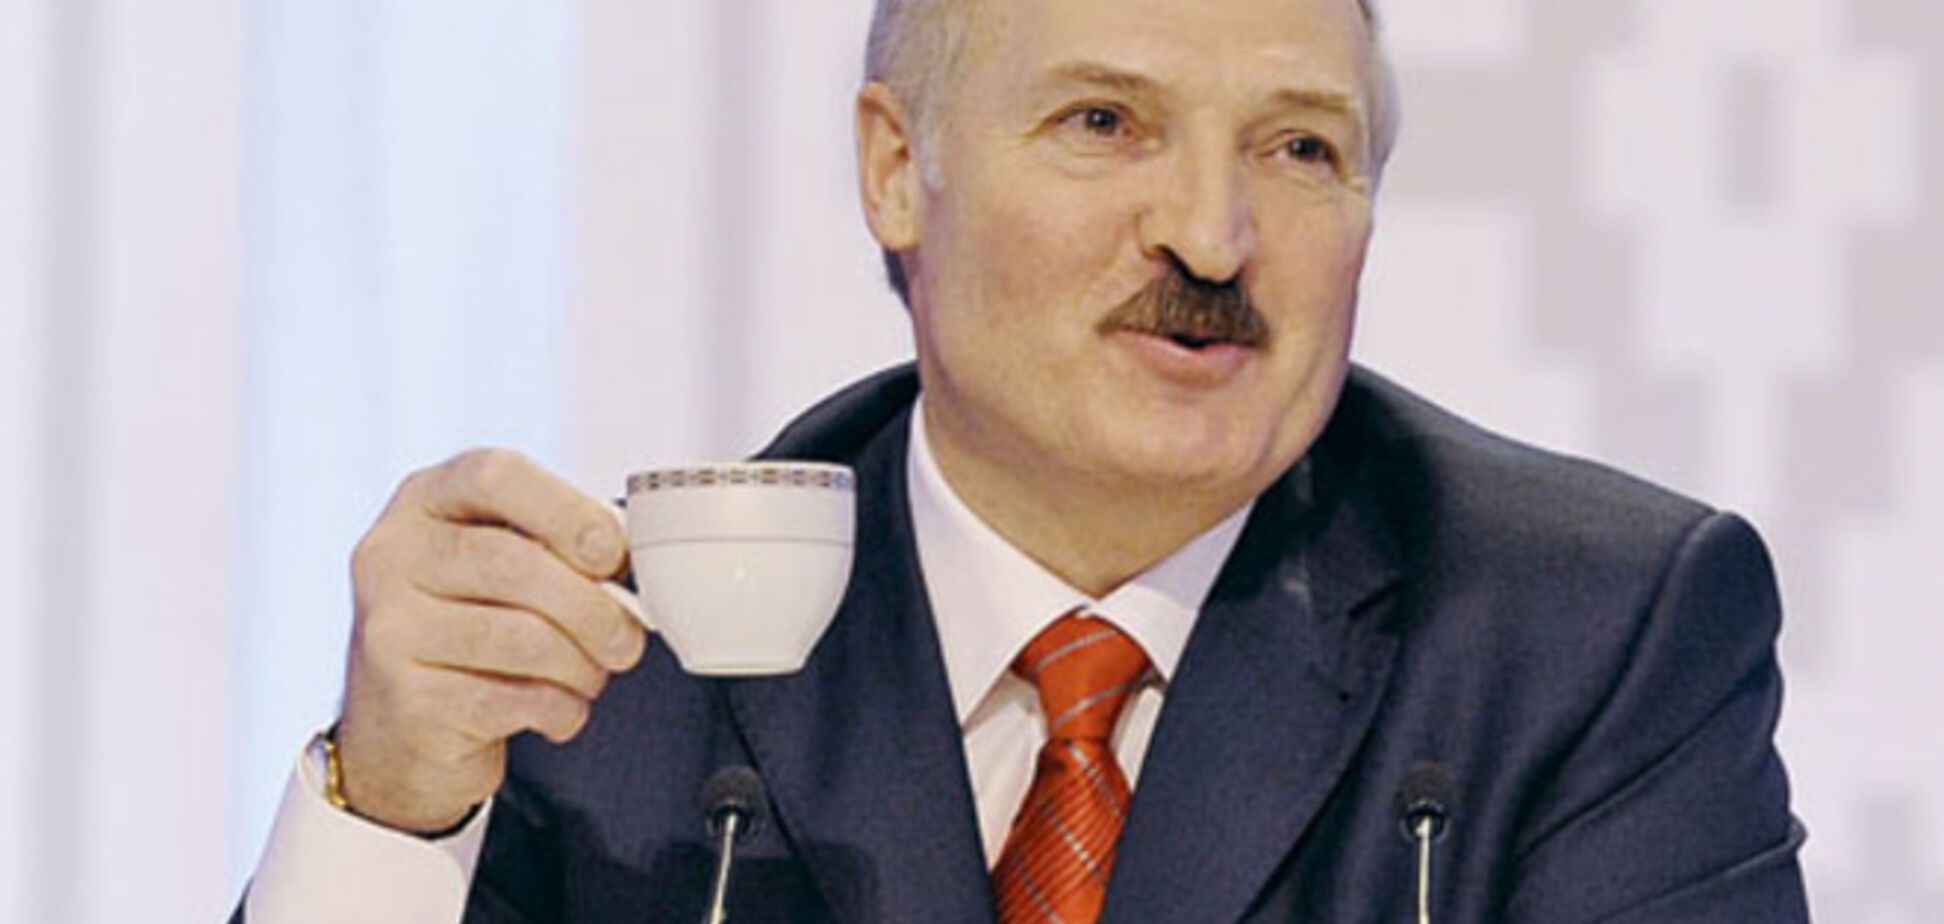 Лукашенко рассказал, откуда взялись слухи о его намерении аннексировать Калининградскую область